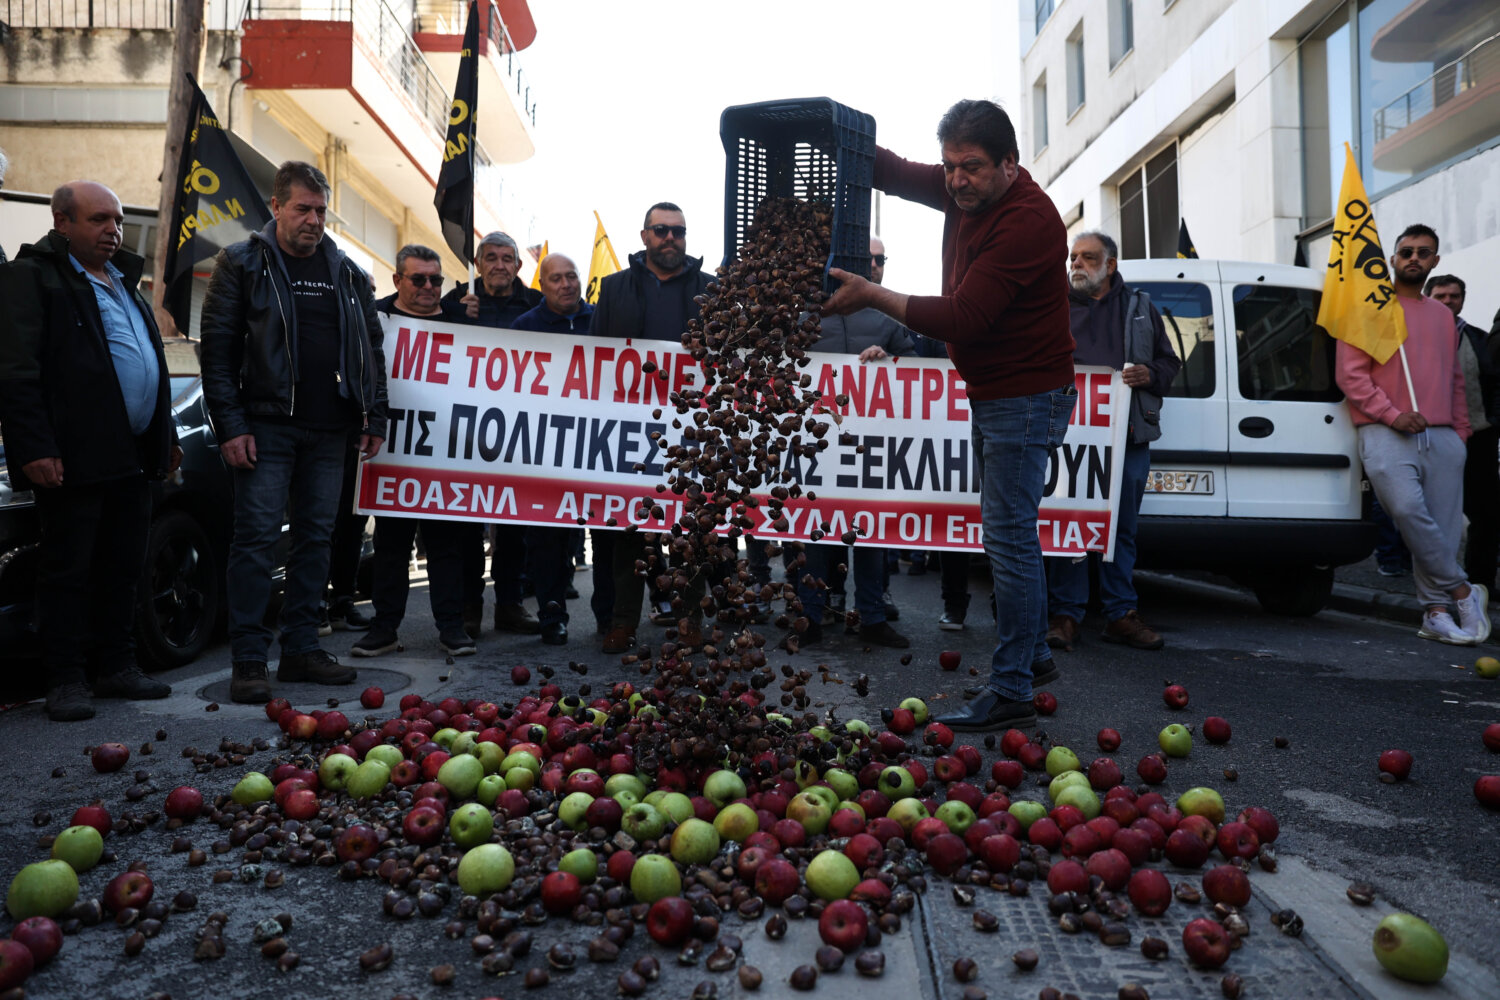 Αγιά: Διαμαρτυρία μηλοπαραγωγών στον ΕΛΓΑ